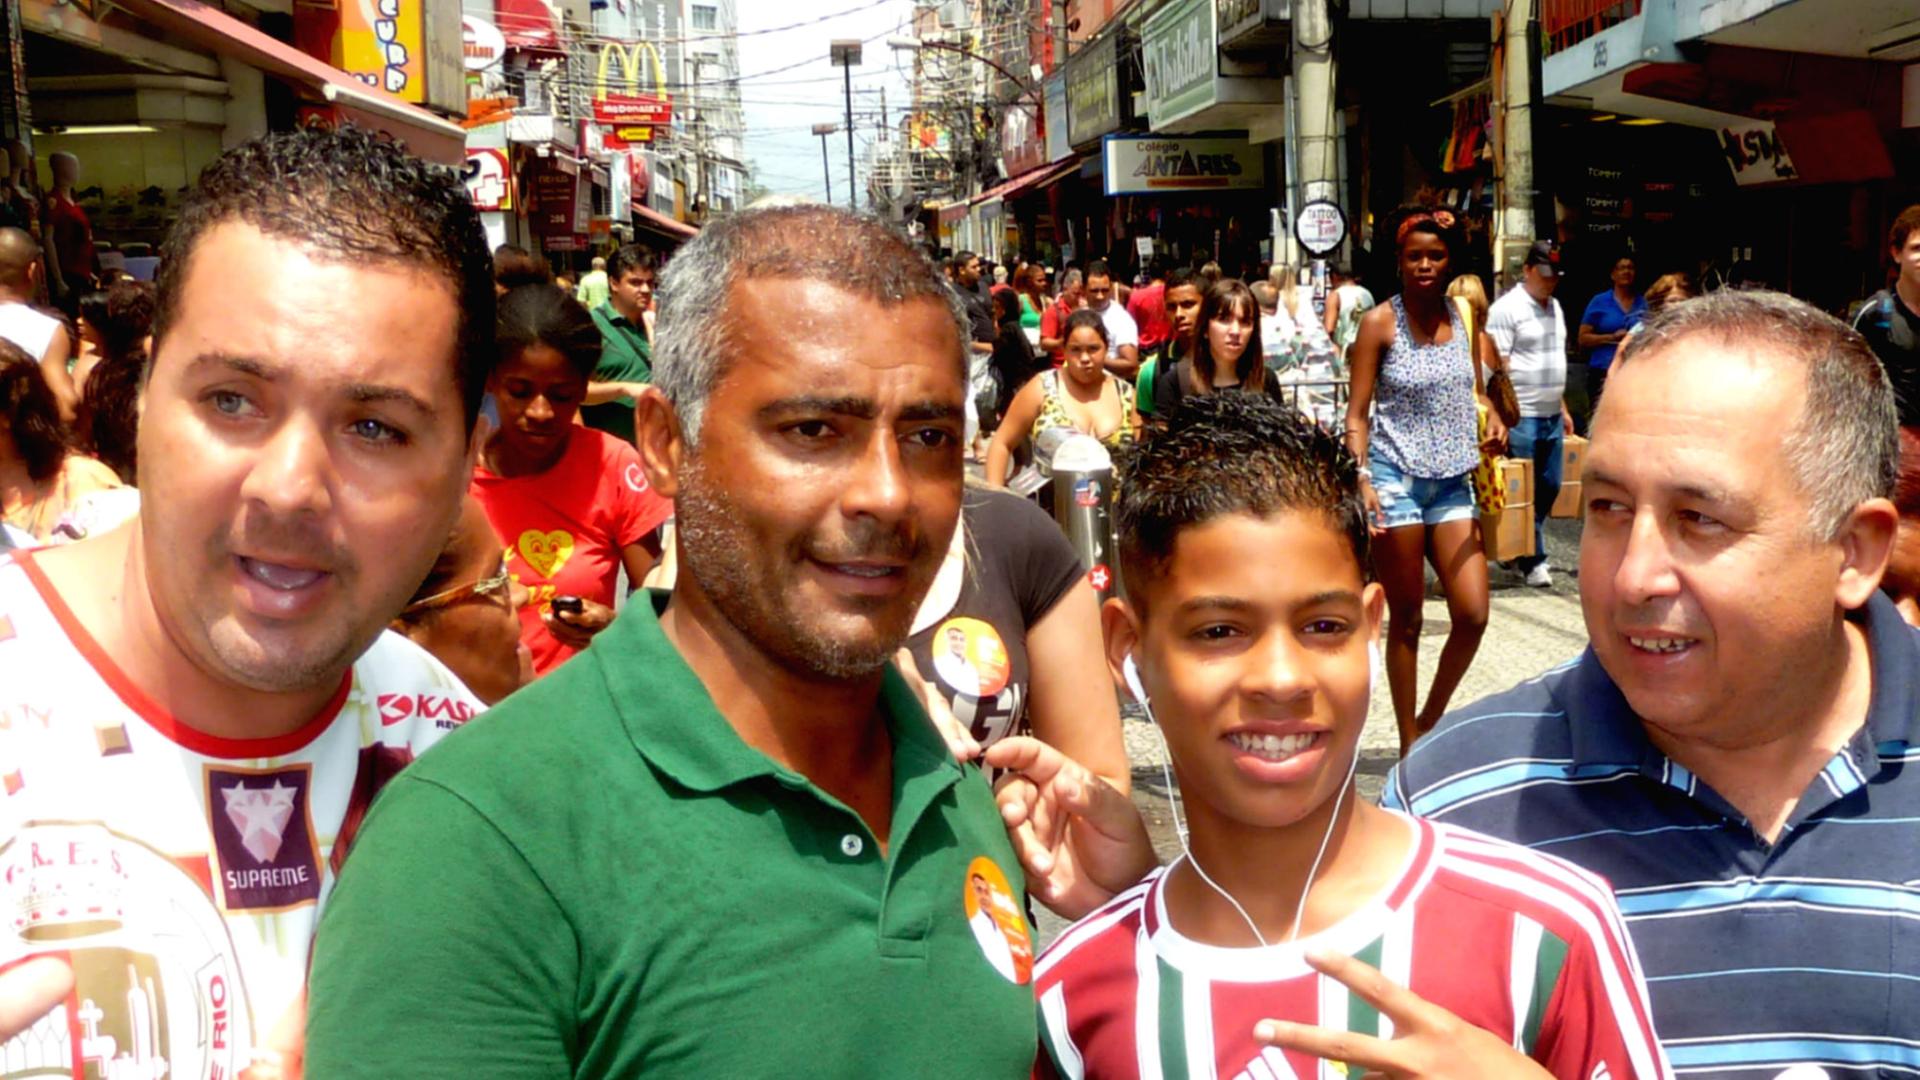 Der brasilianische Ex-Fußballer Romário (2. von links) auf Wahlkampftour: Er steht zwischen mehreren Menschen und lässt sich fotografieren.